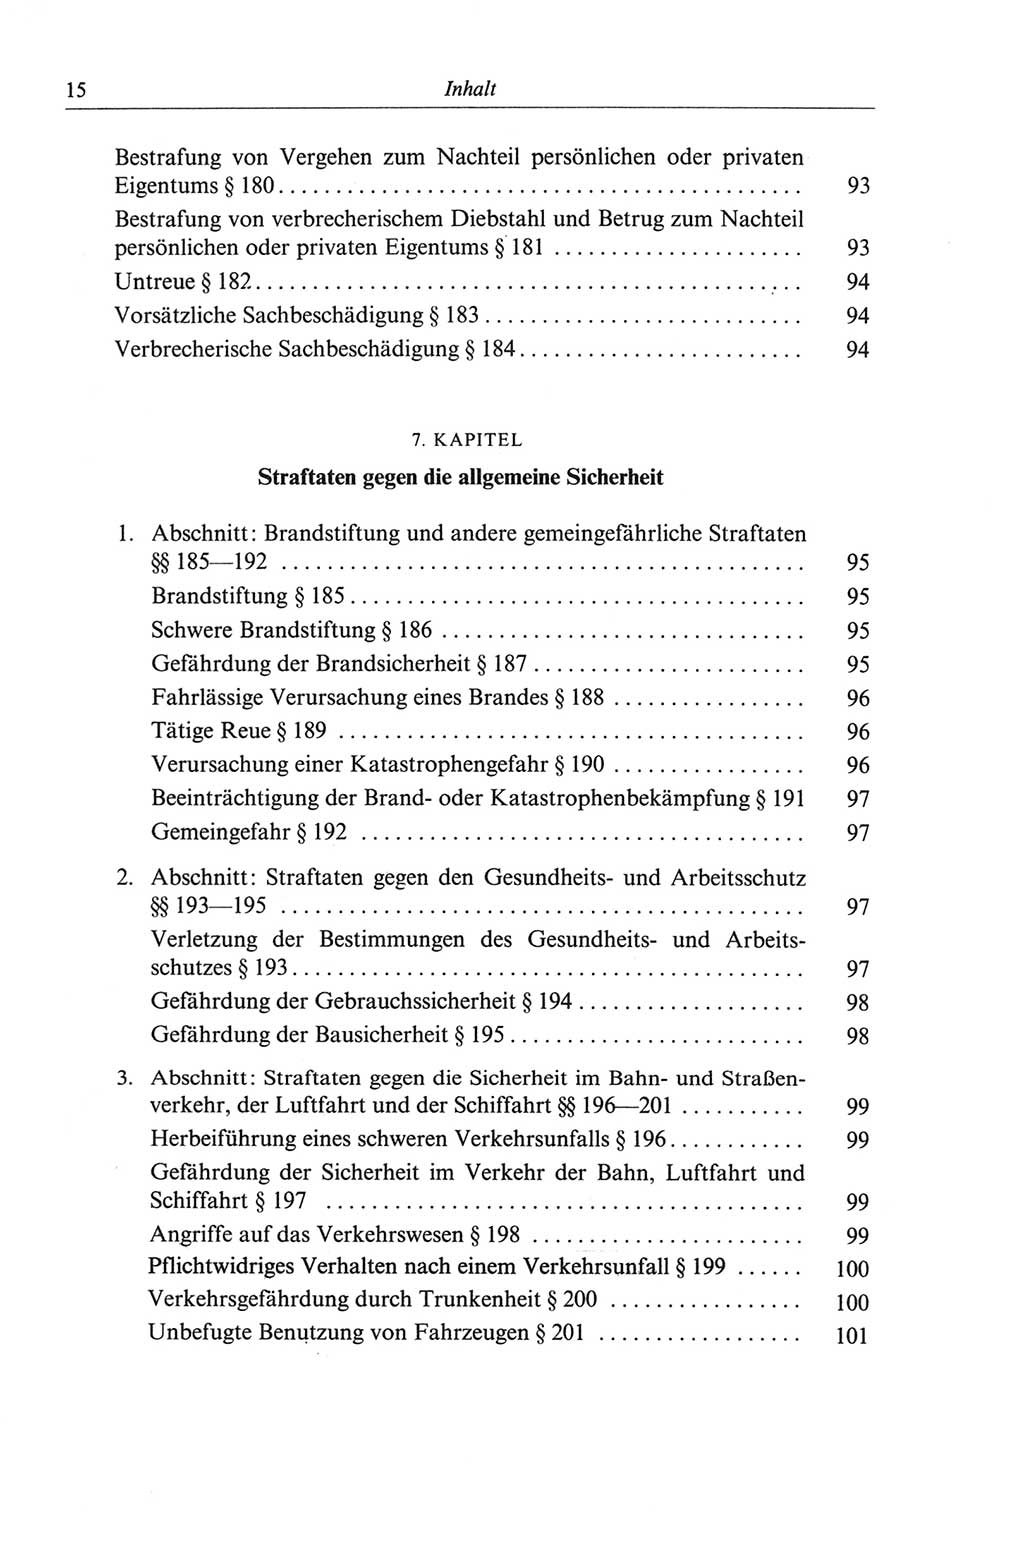 Strafgesetzbuch (StGB) der Deutschen Demokratischen Republik (DDR) und angrenzende Gesetze und Bestimmungen 1968, Seite 15 (StGB Ges. Best. DDR 1968, S. 15)